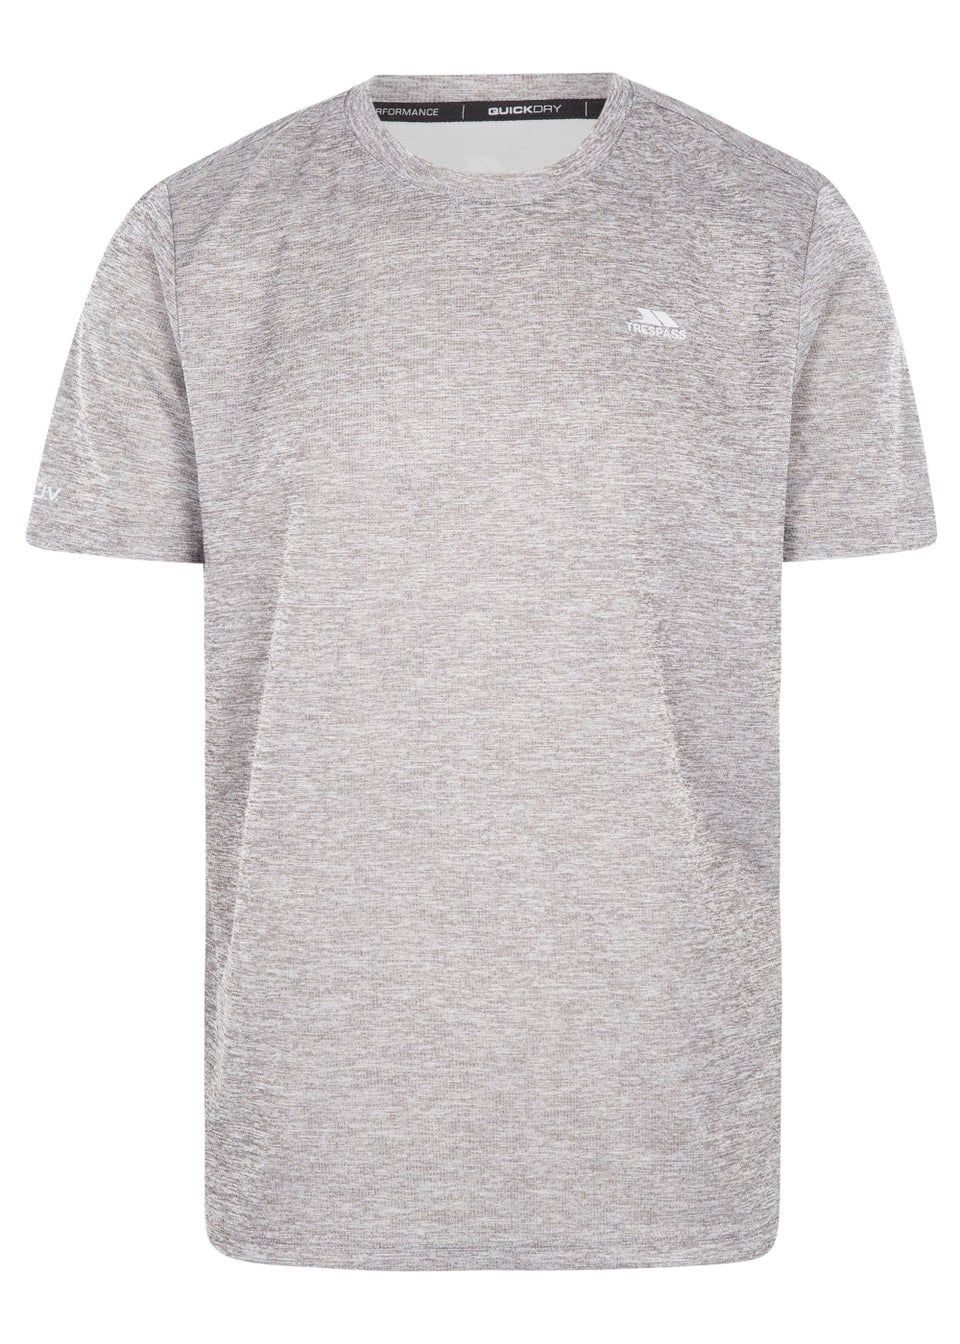 Trespass Raeran Grey Technical T-Shirt